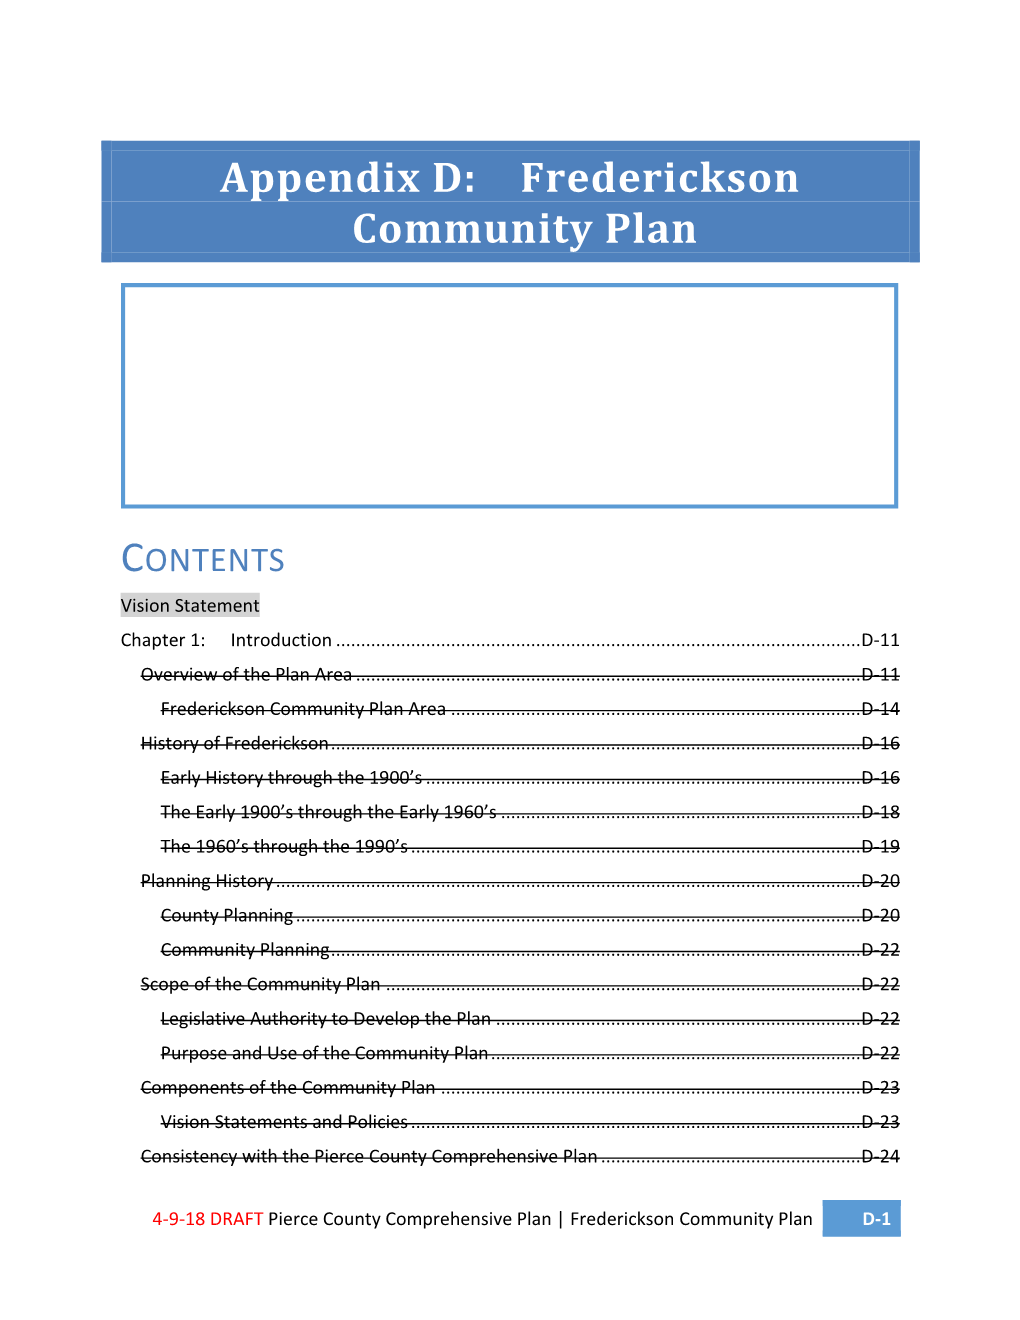 Appendix D: Frederickson Community Plan